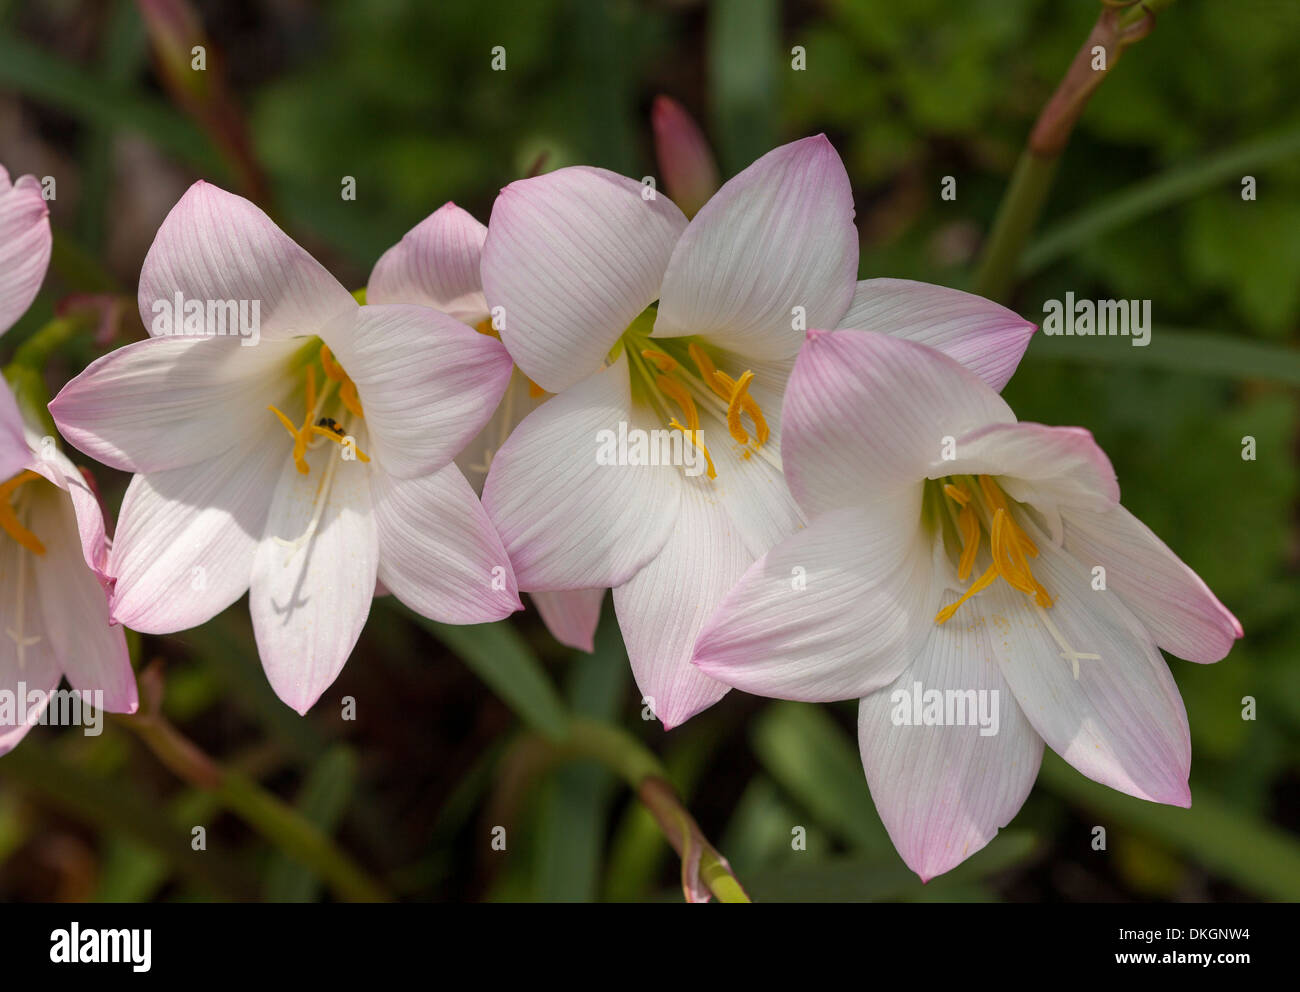 Clúster de delicada rosa y las flores blancas de Habranthus robustus - lluvia de lirios, primavera / verano bulbos de flores Foto de stock